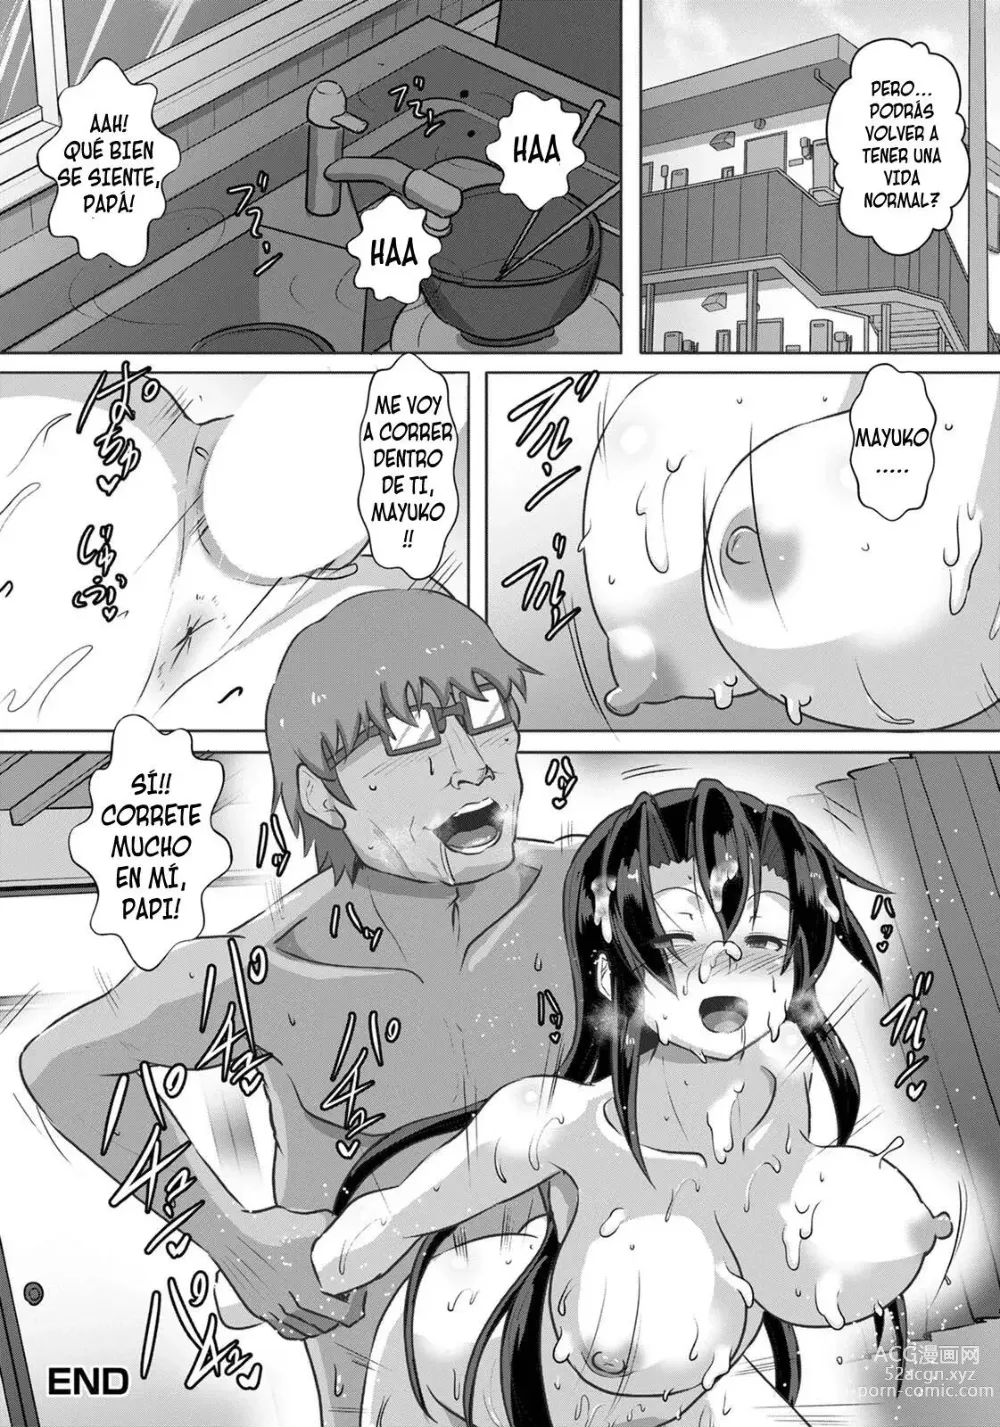 Page 60 of manga El registro de una chica de instituto que salda sus deudas con una violación 1-3